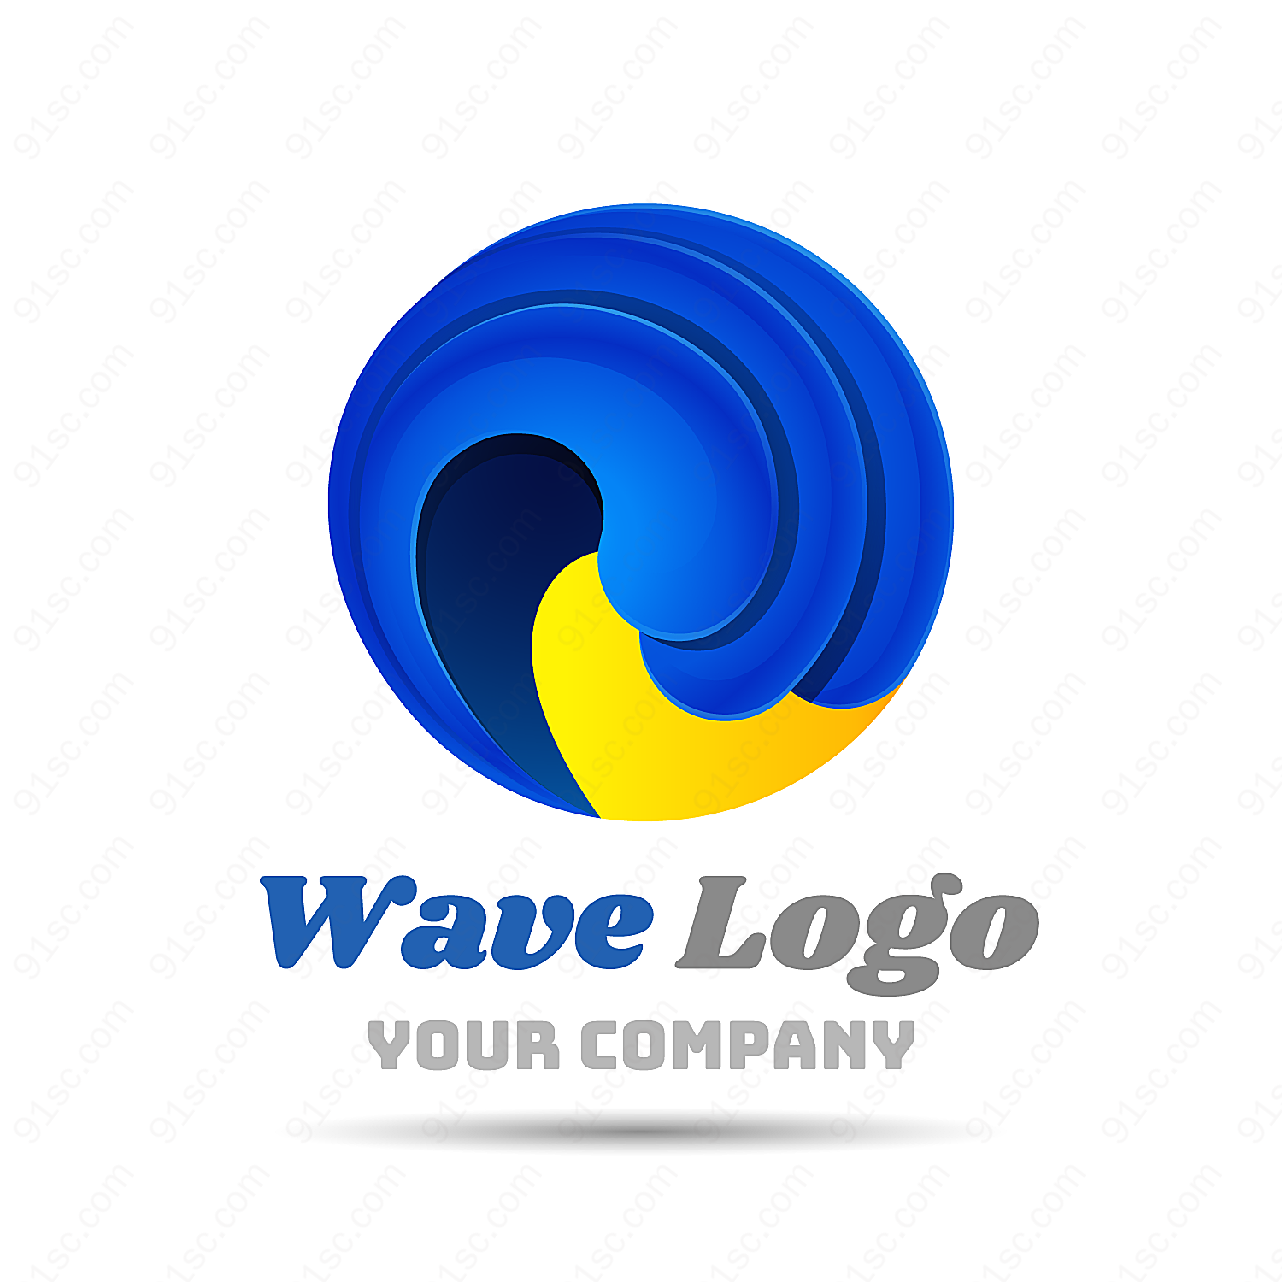 logo矢量素材矢量logo图形